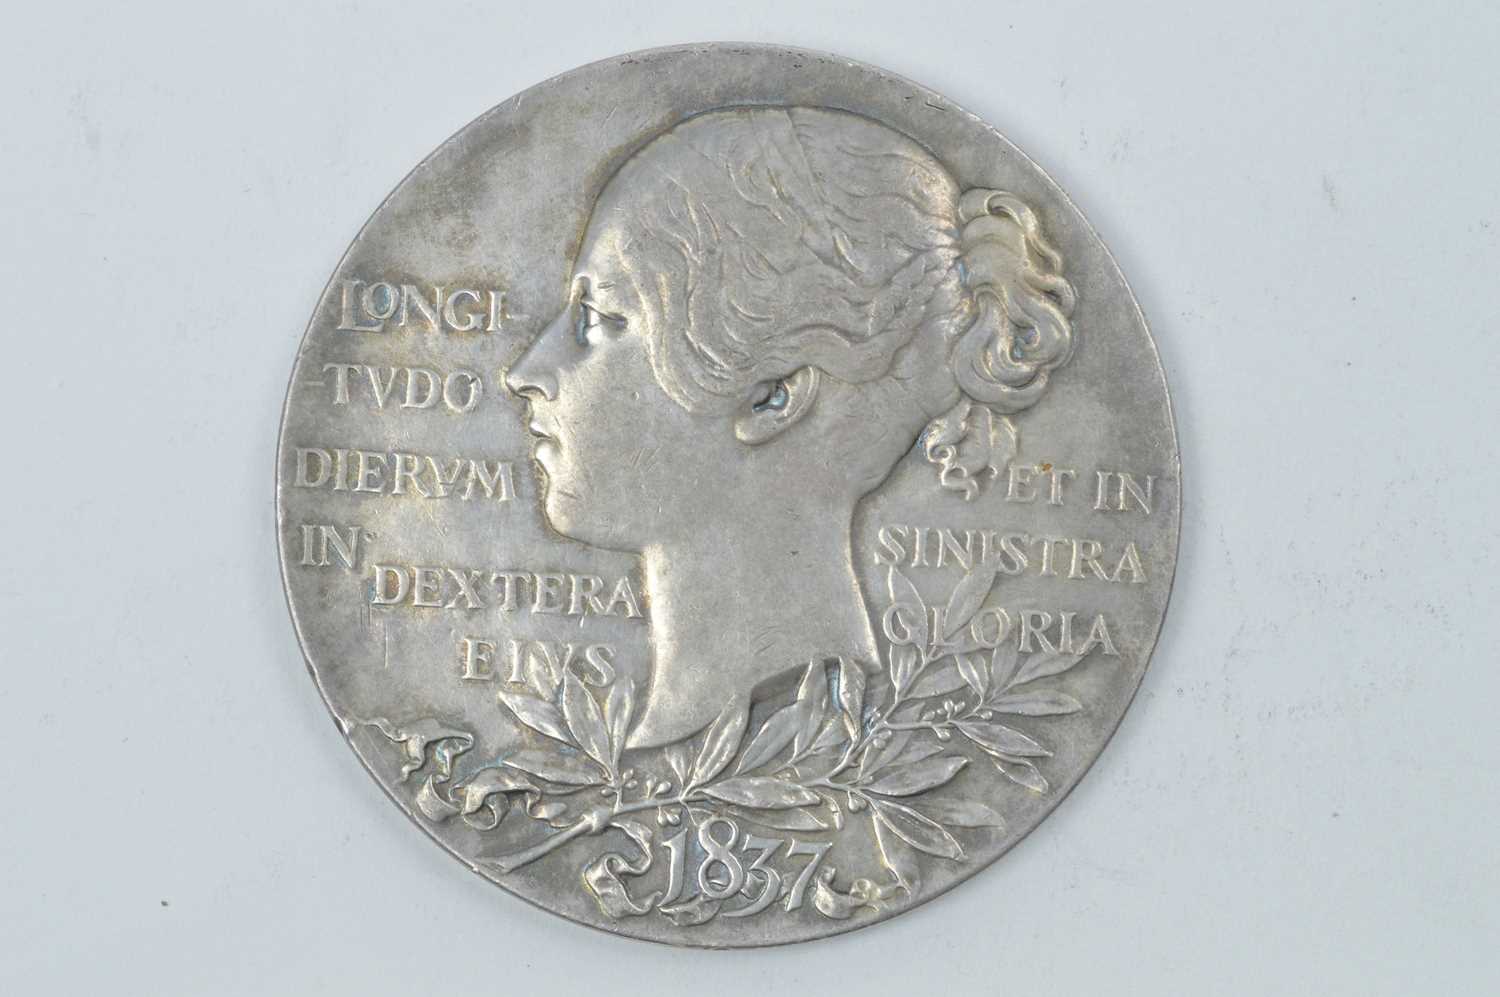 Lot 901 - Queen Victoria Diamond Jubilee silver commemorative medallion